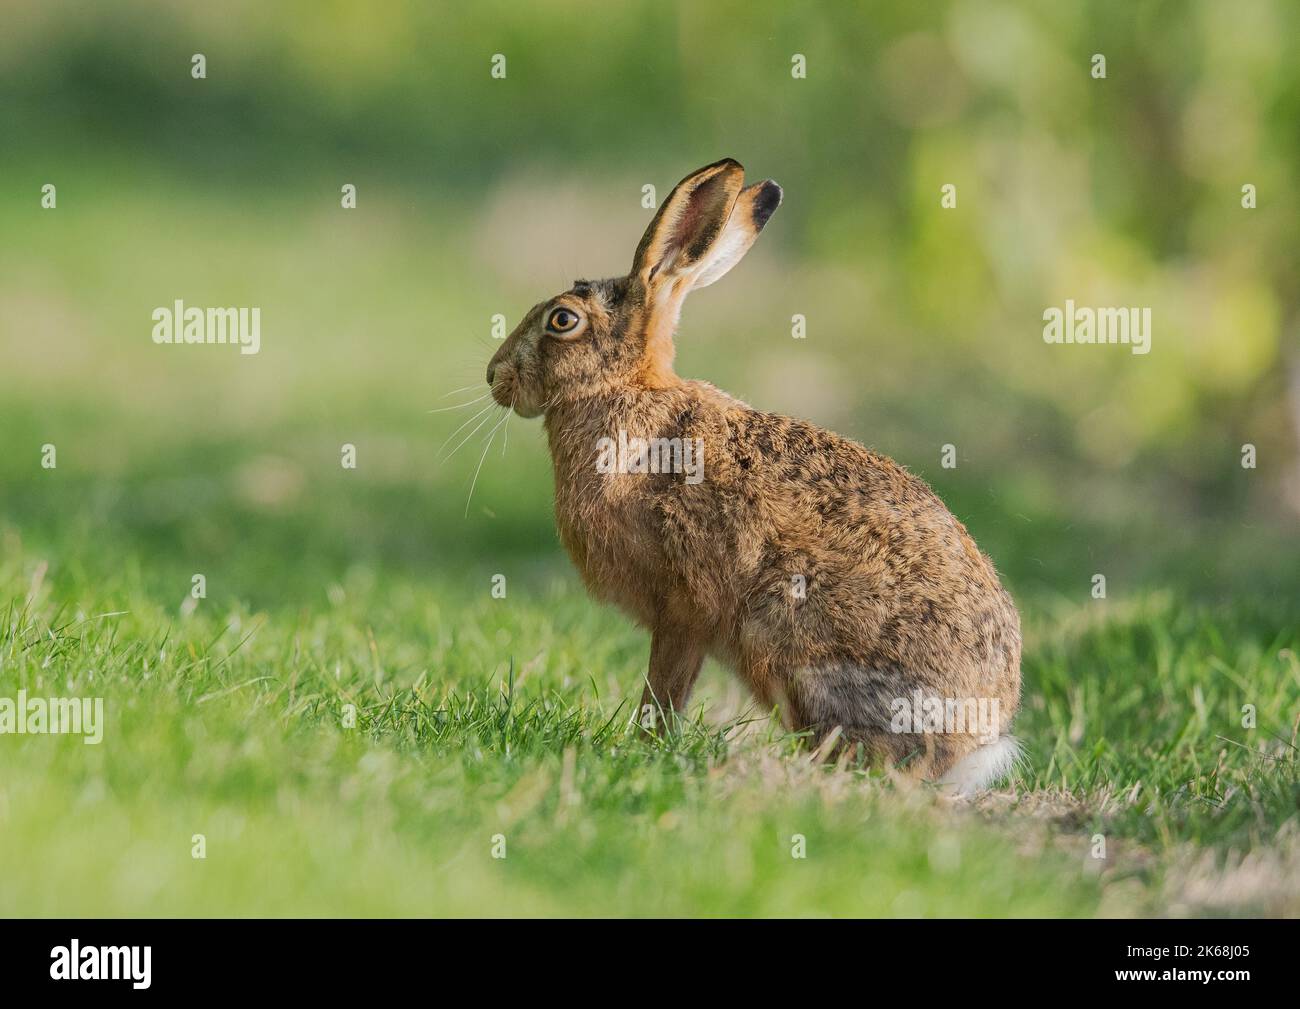 Ein großer, gesunder Brauner Hase, der seitlich zur Kamera sitzt und Details seines orangefarbenen Auges, großer Ohren und meliertem braunen Pelz zeigt - Suffolk, Großbritannien Stockfoto